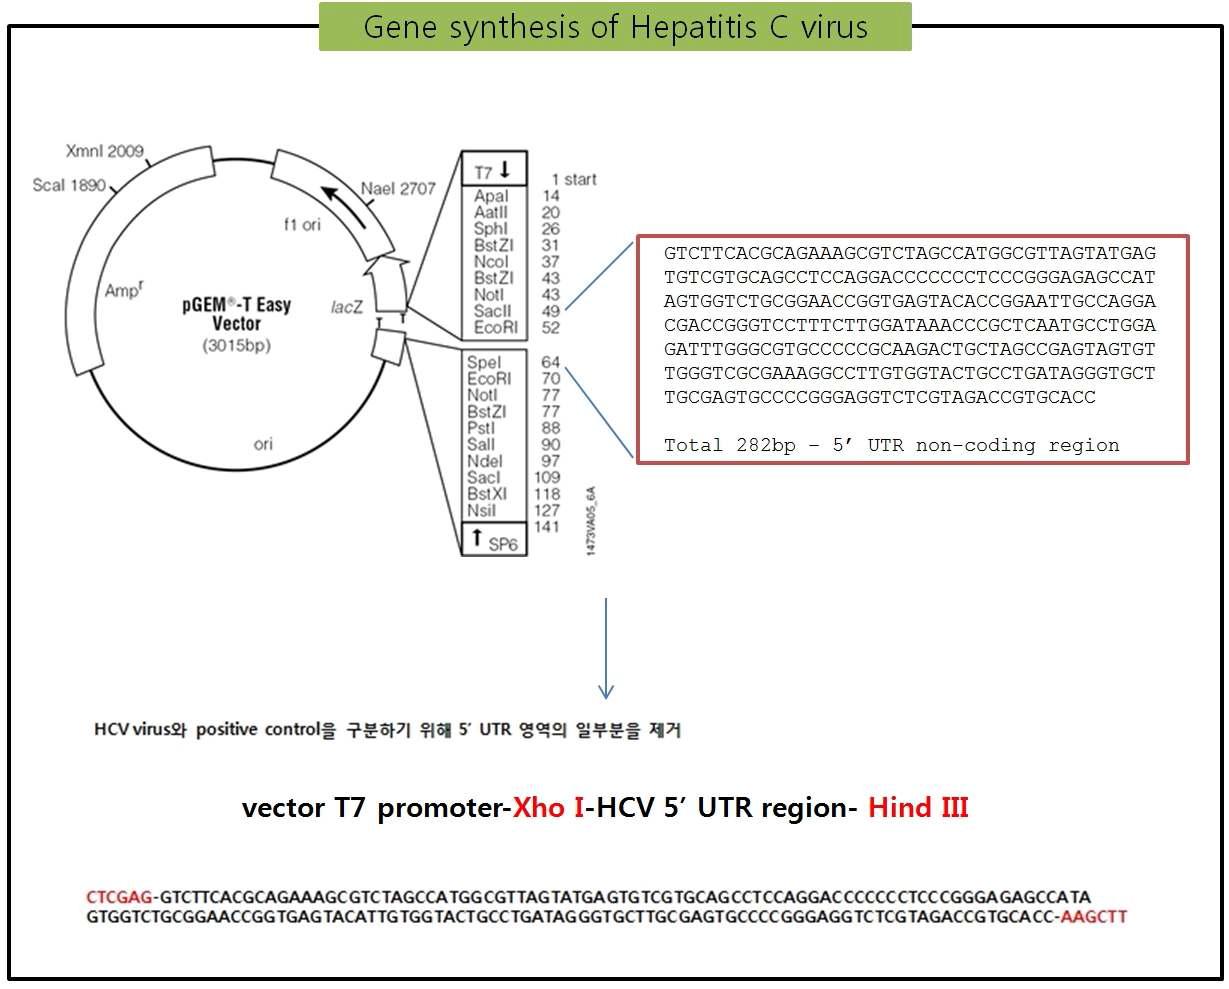 Synthesis of Hepatitis C virus